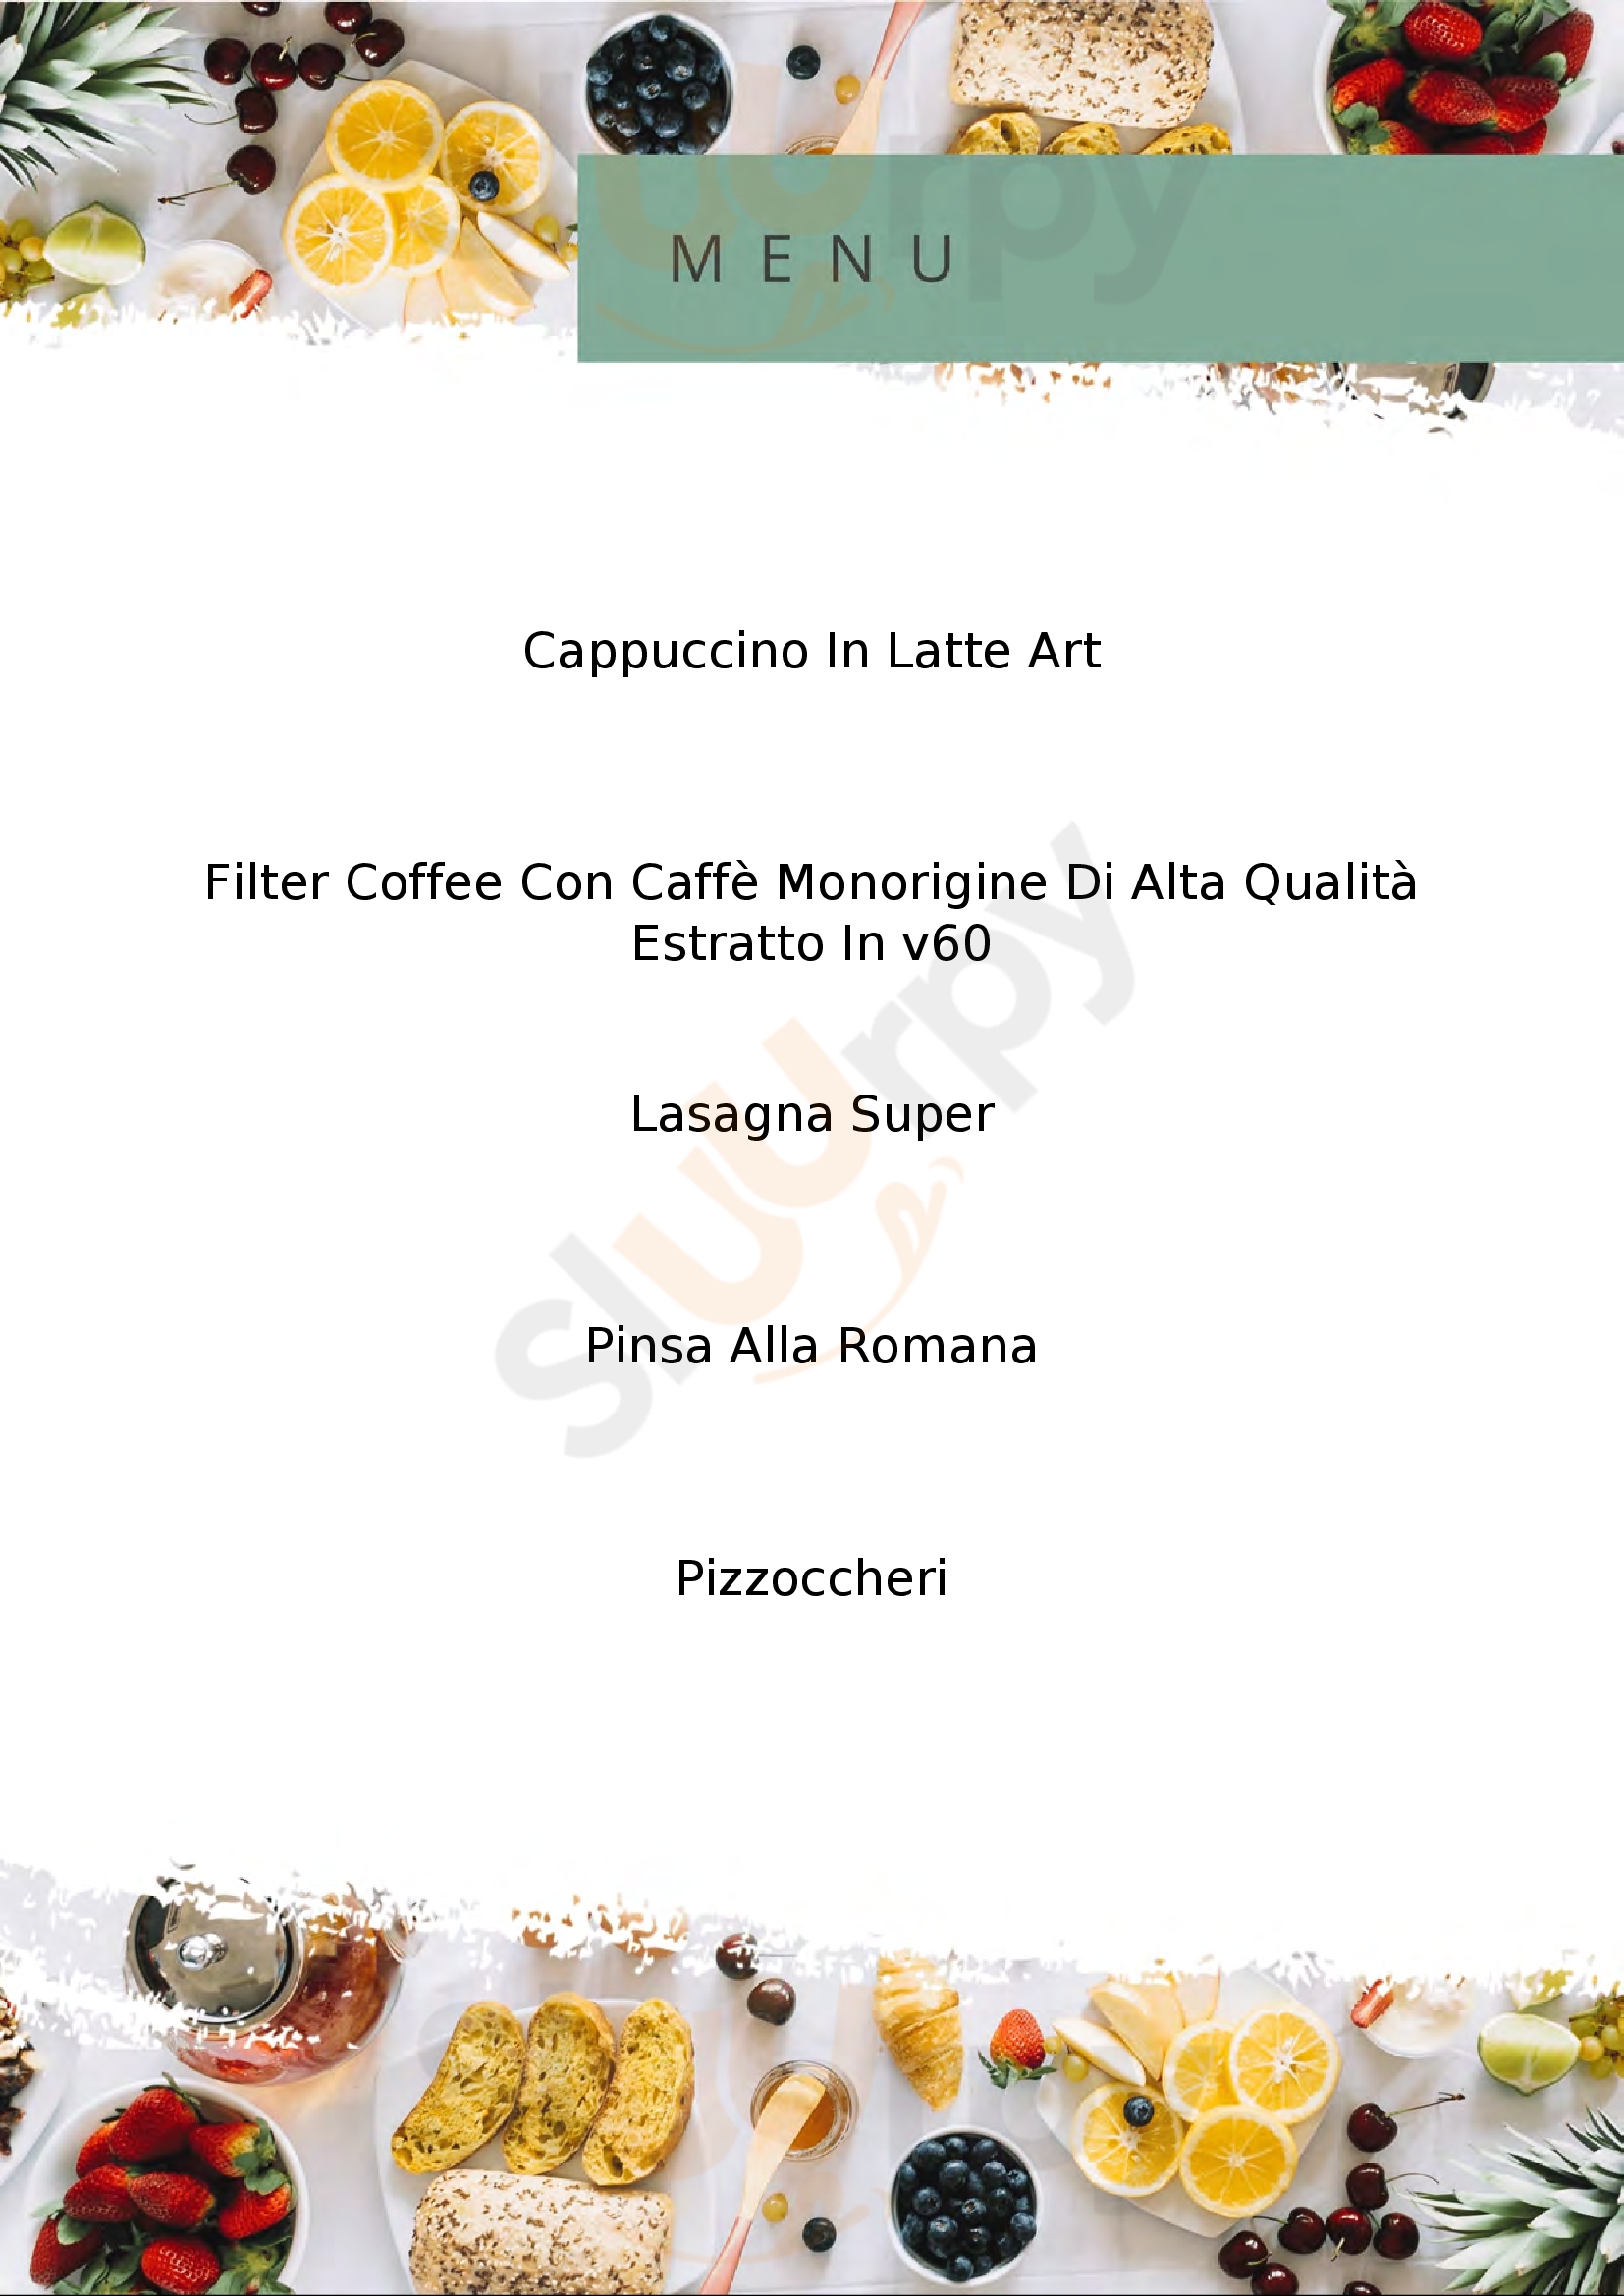 La Dolce Vita Cafè Milano menù 1 pagina